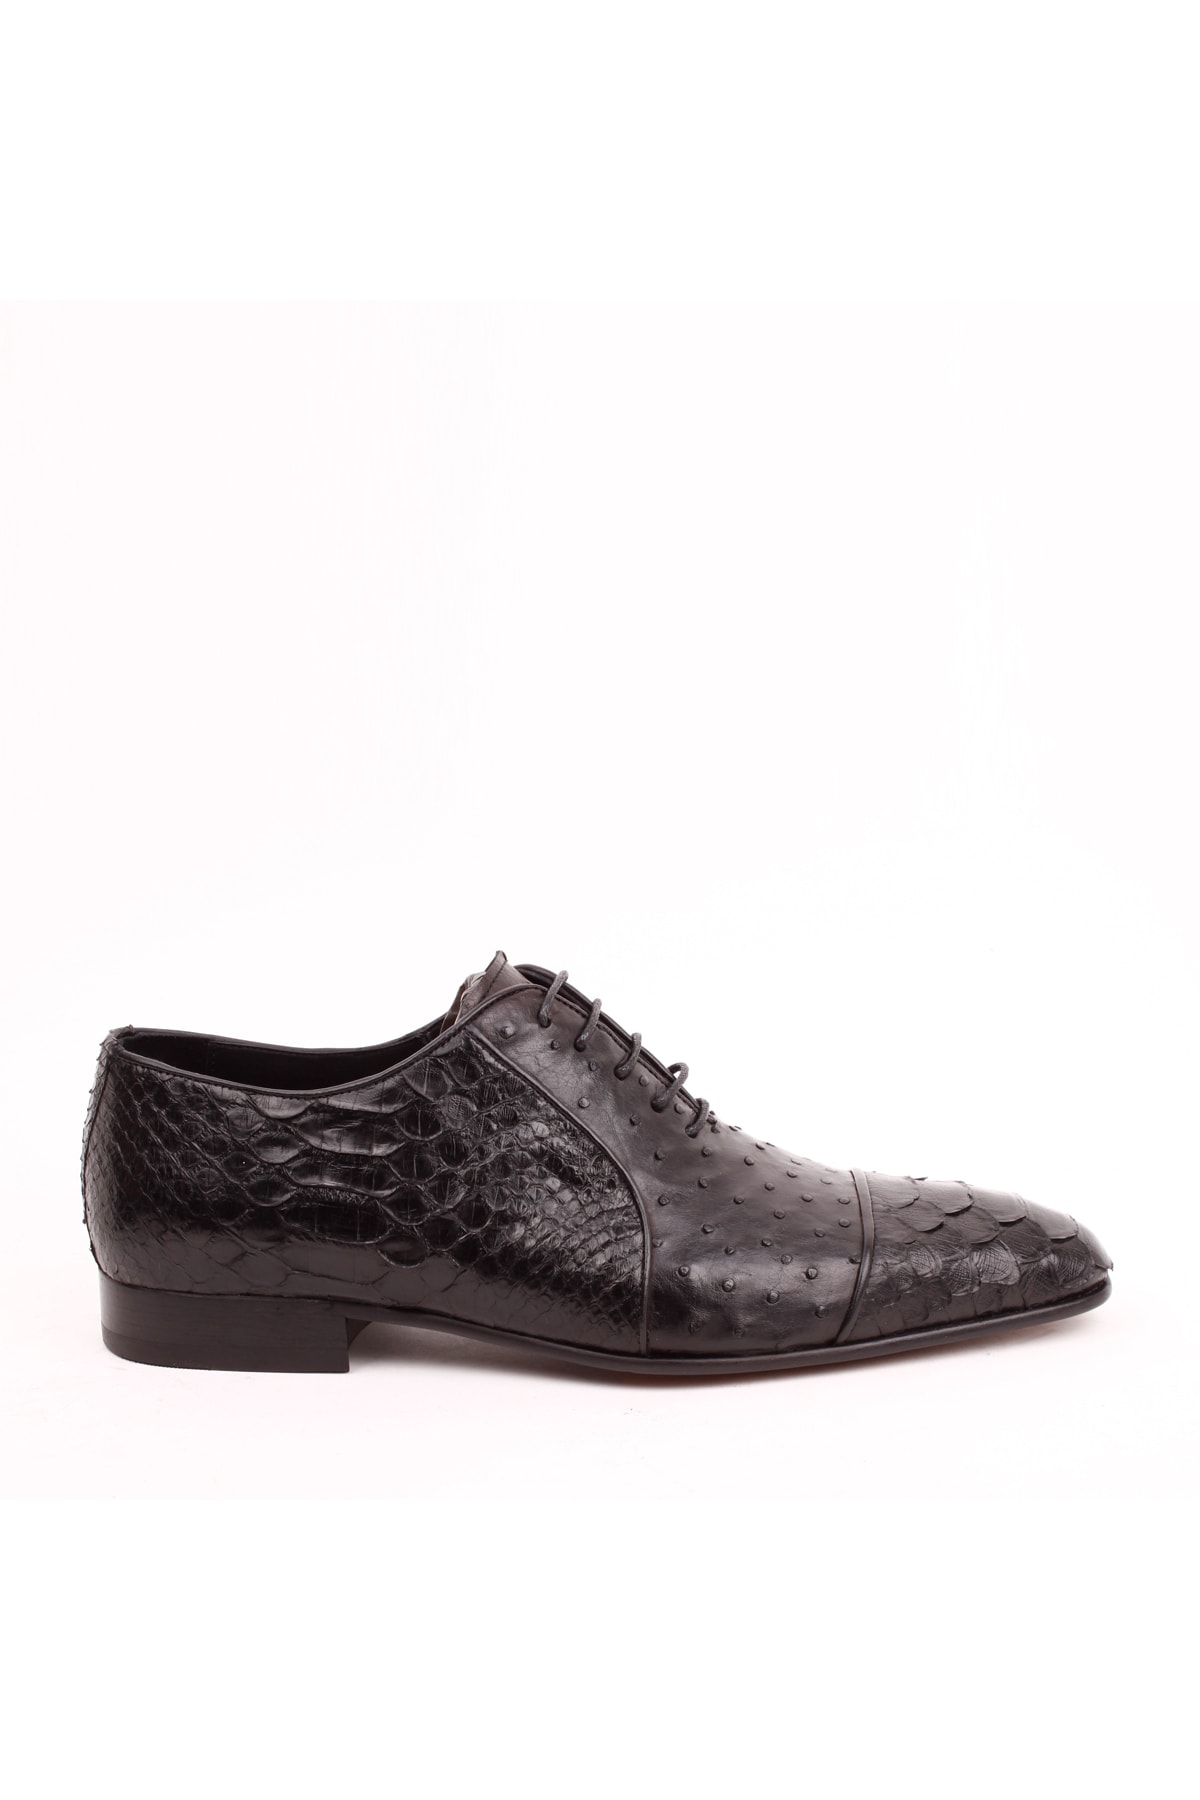 Bruno Shoes 6270-46k Erkek Hakiki Piton Ve Devekuşu Deri Kösele Taban Ayakkabı-siyah